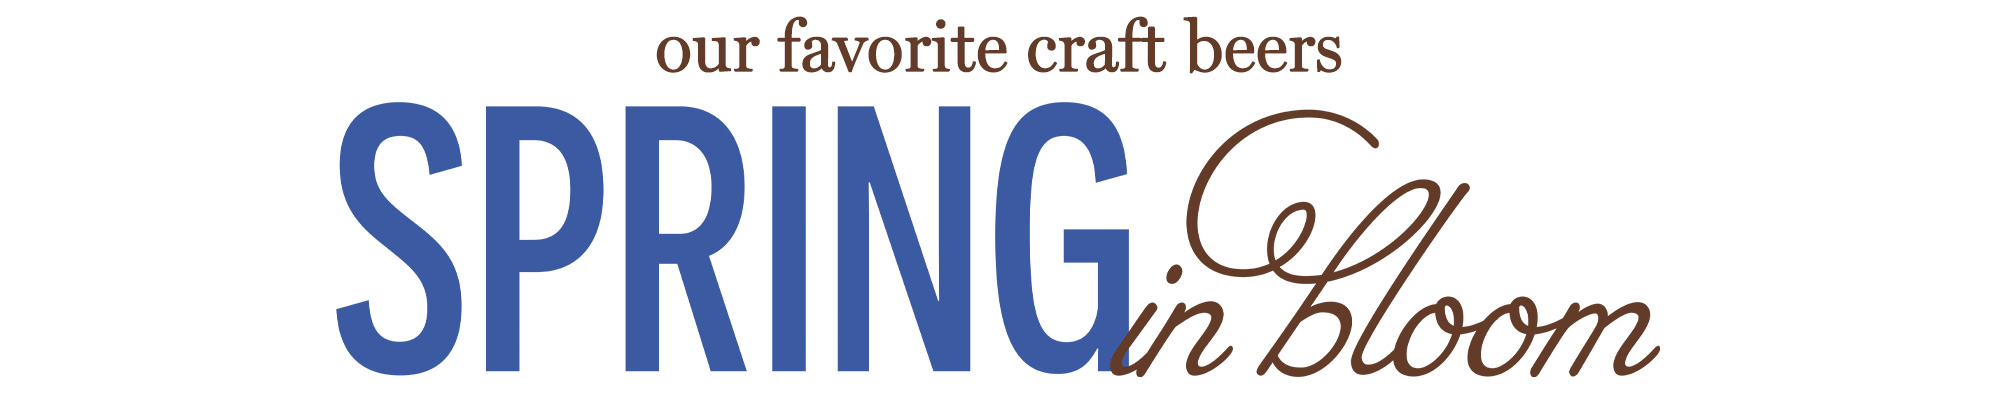 our favorite craft beers Spring in Bloom